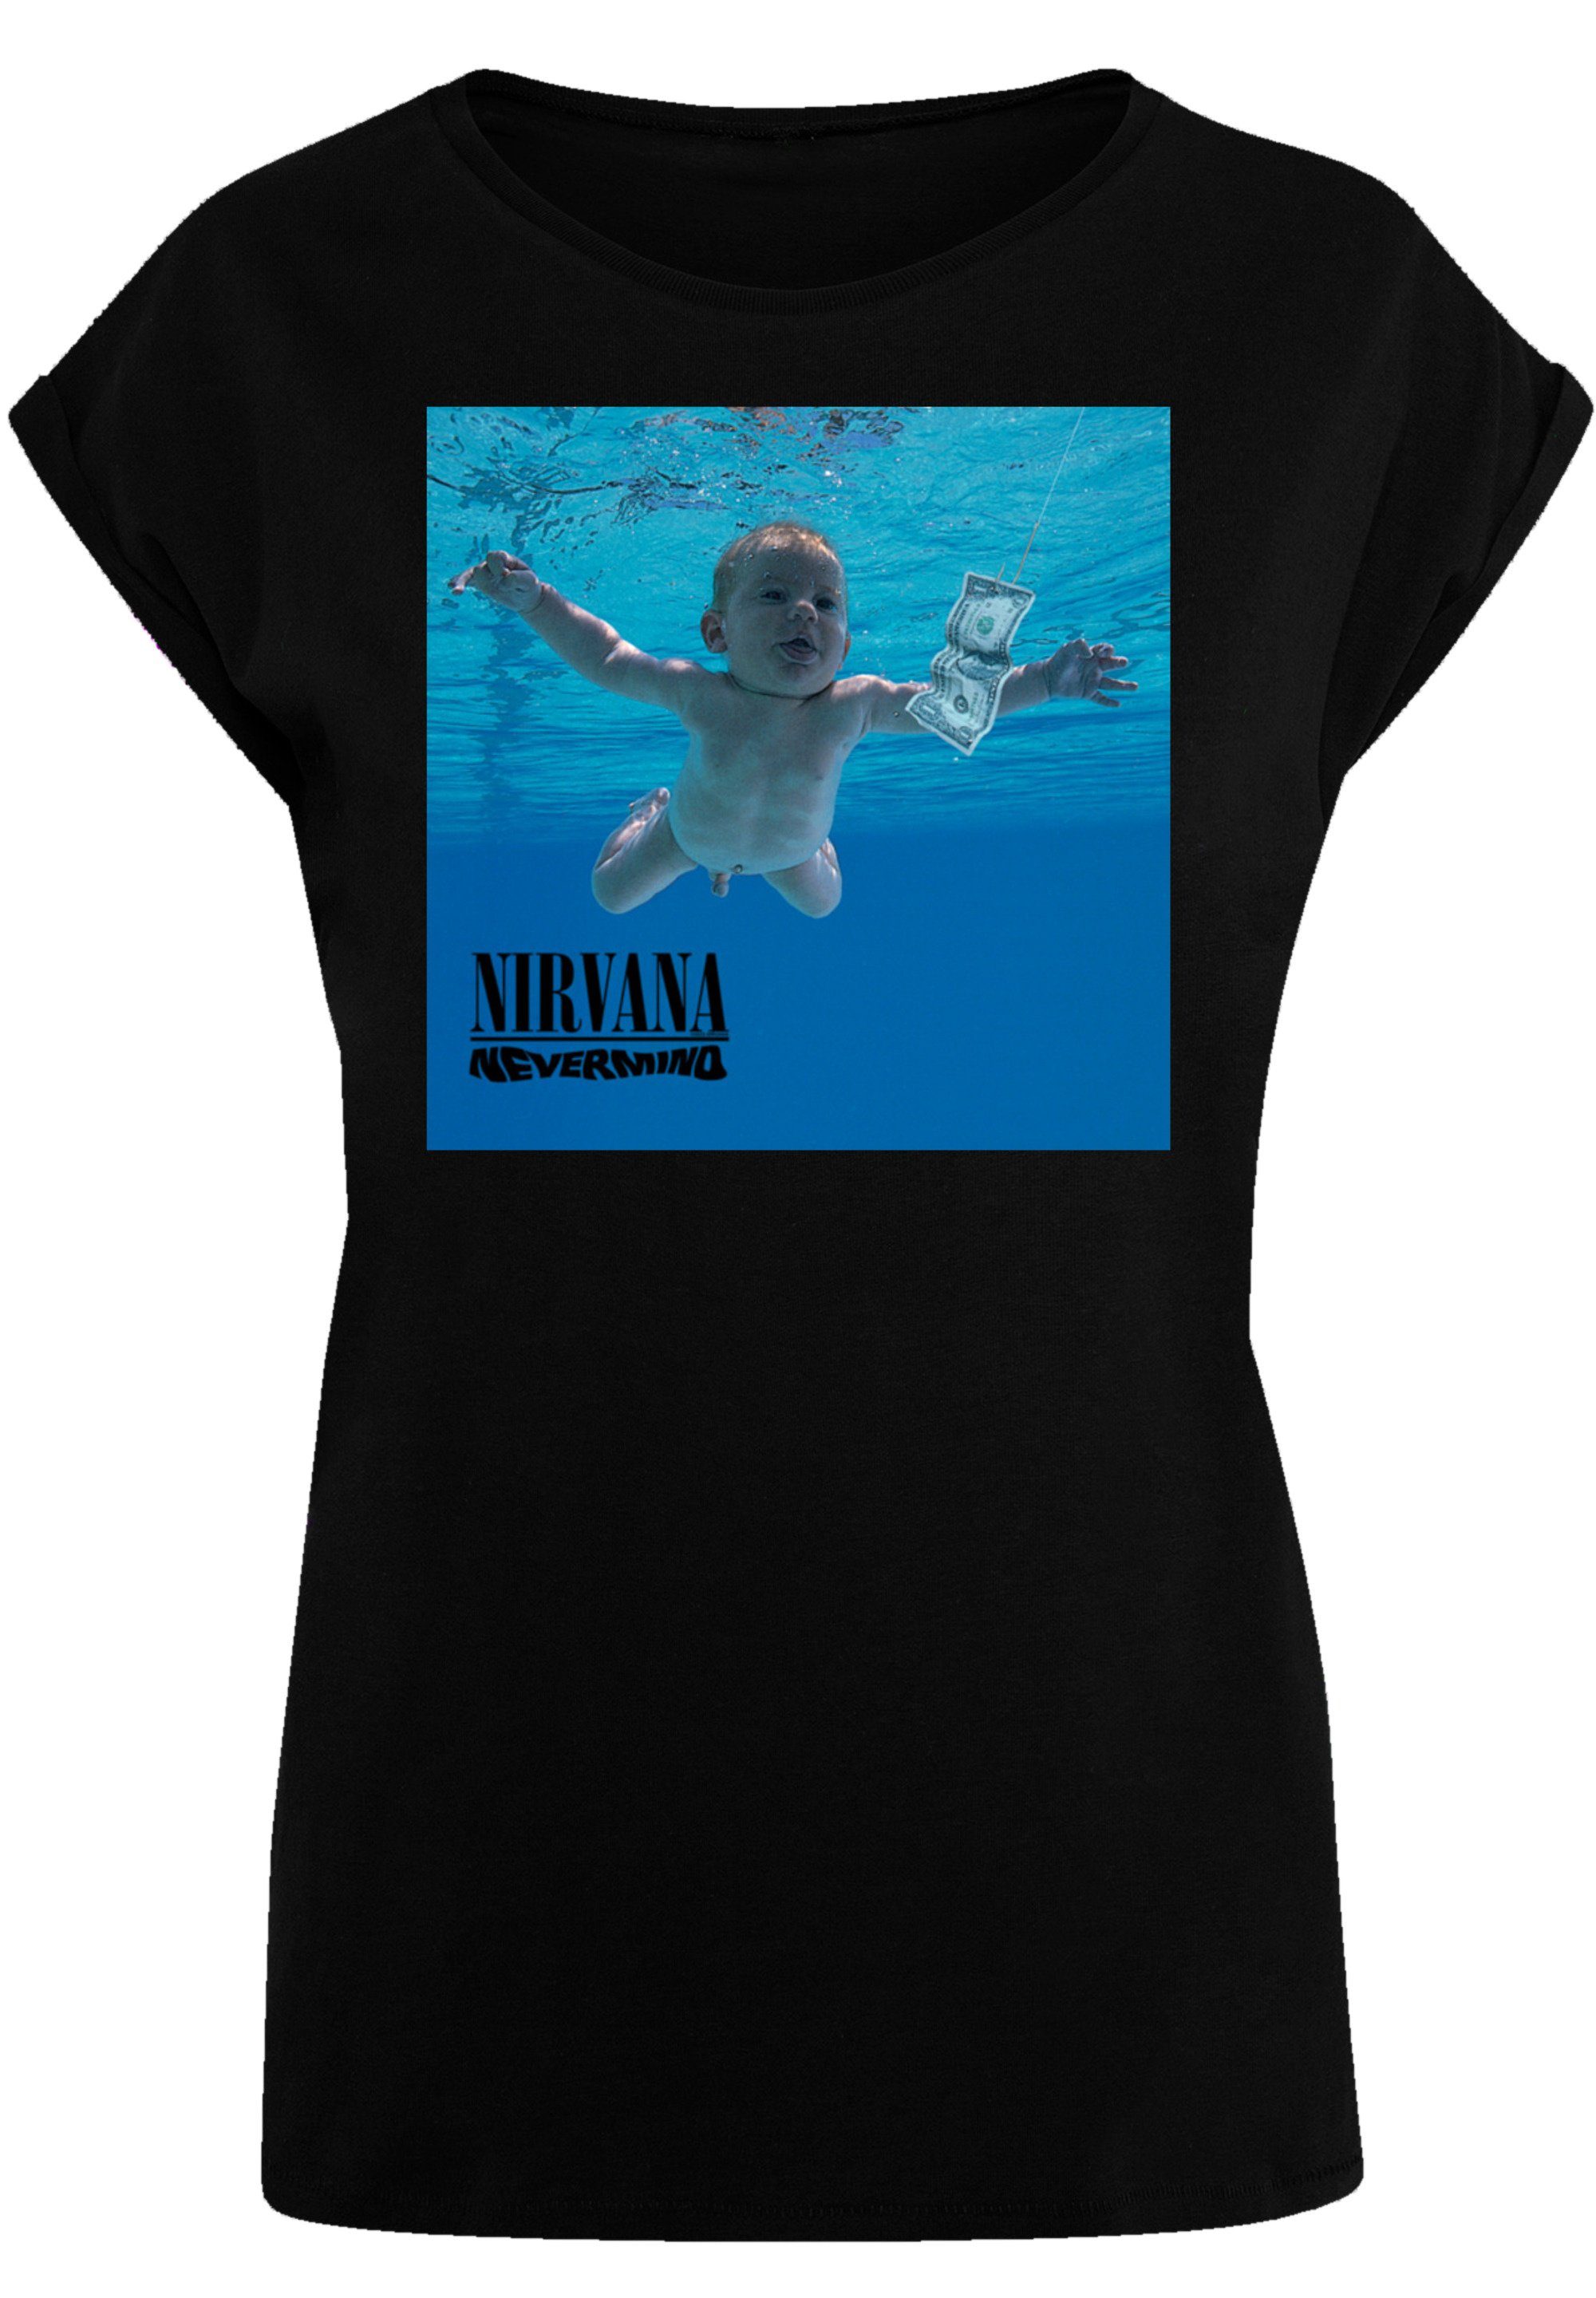 Qualität Rock T-Shirt schwarz Nevermind Album F4NT4STIC Premium Nirvana Band